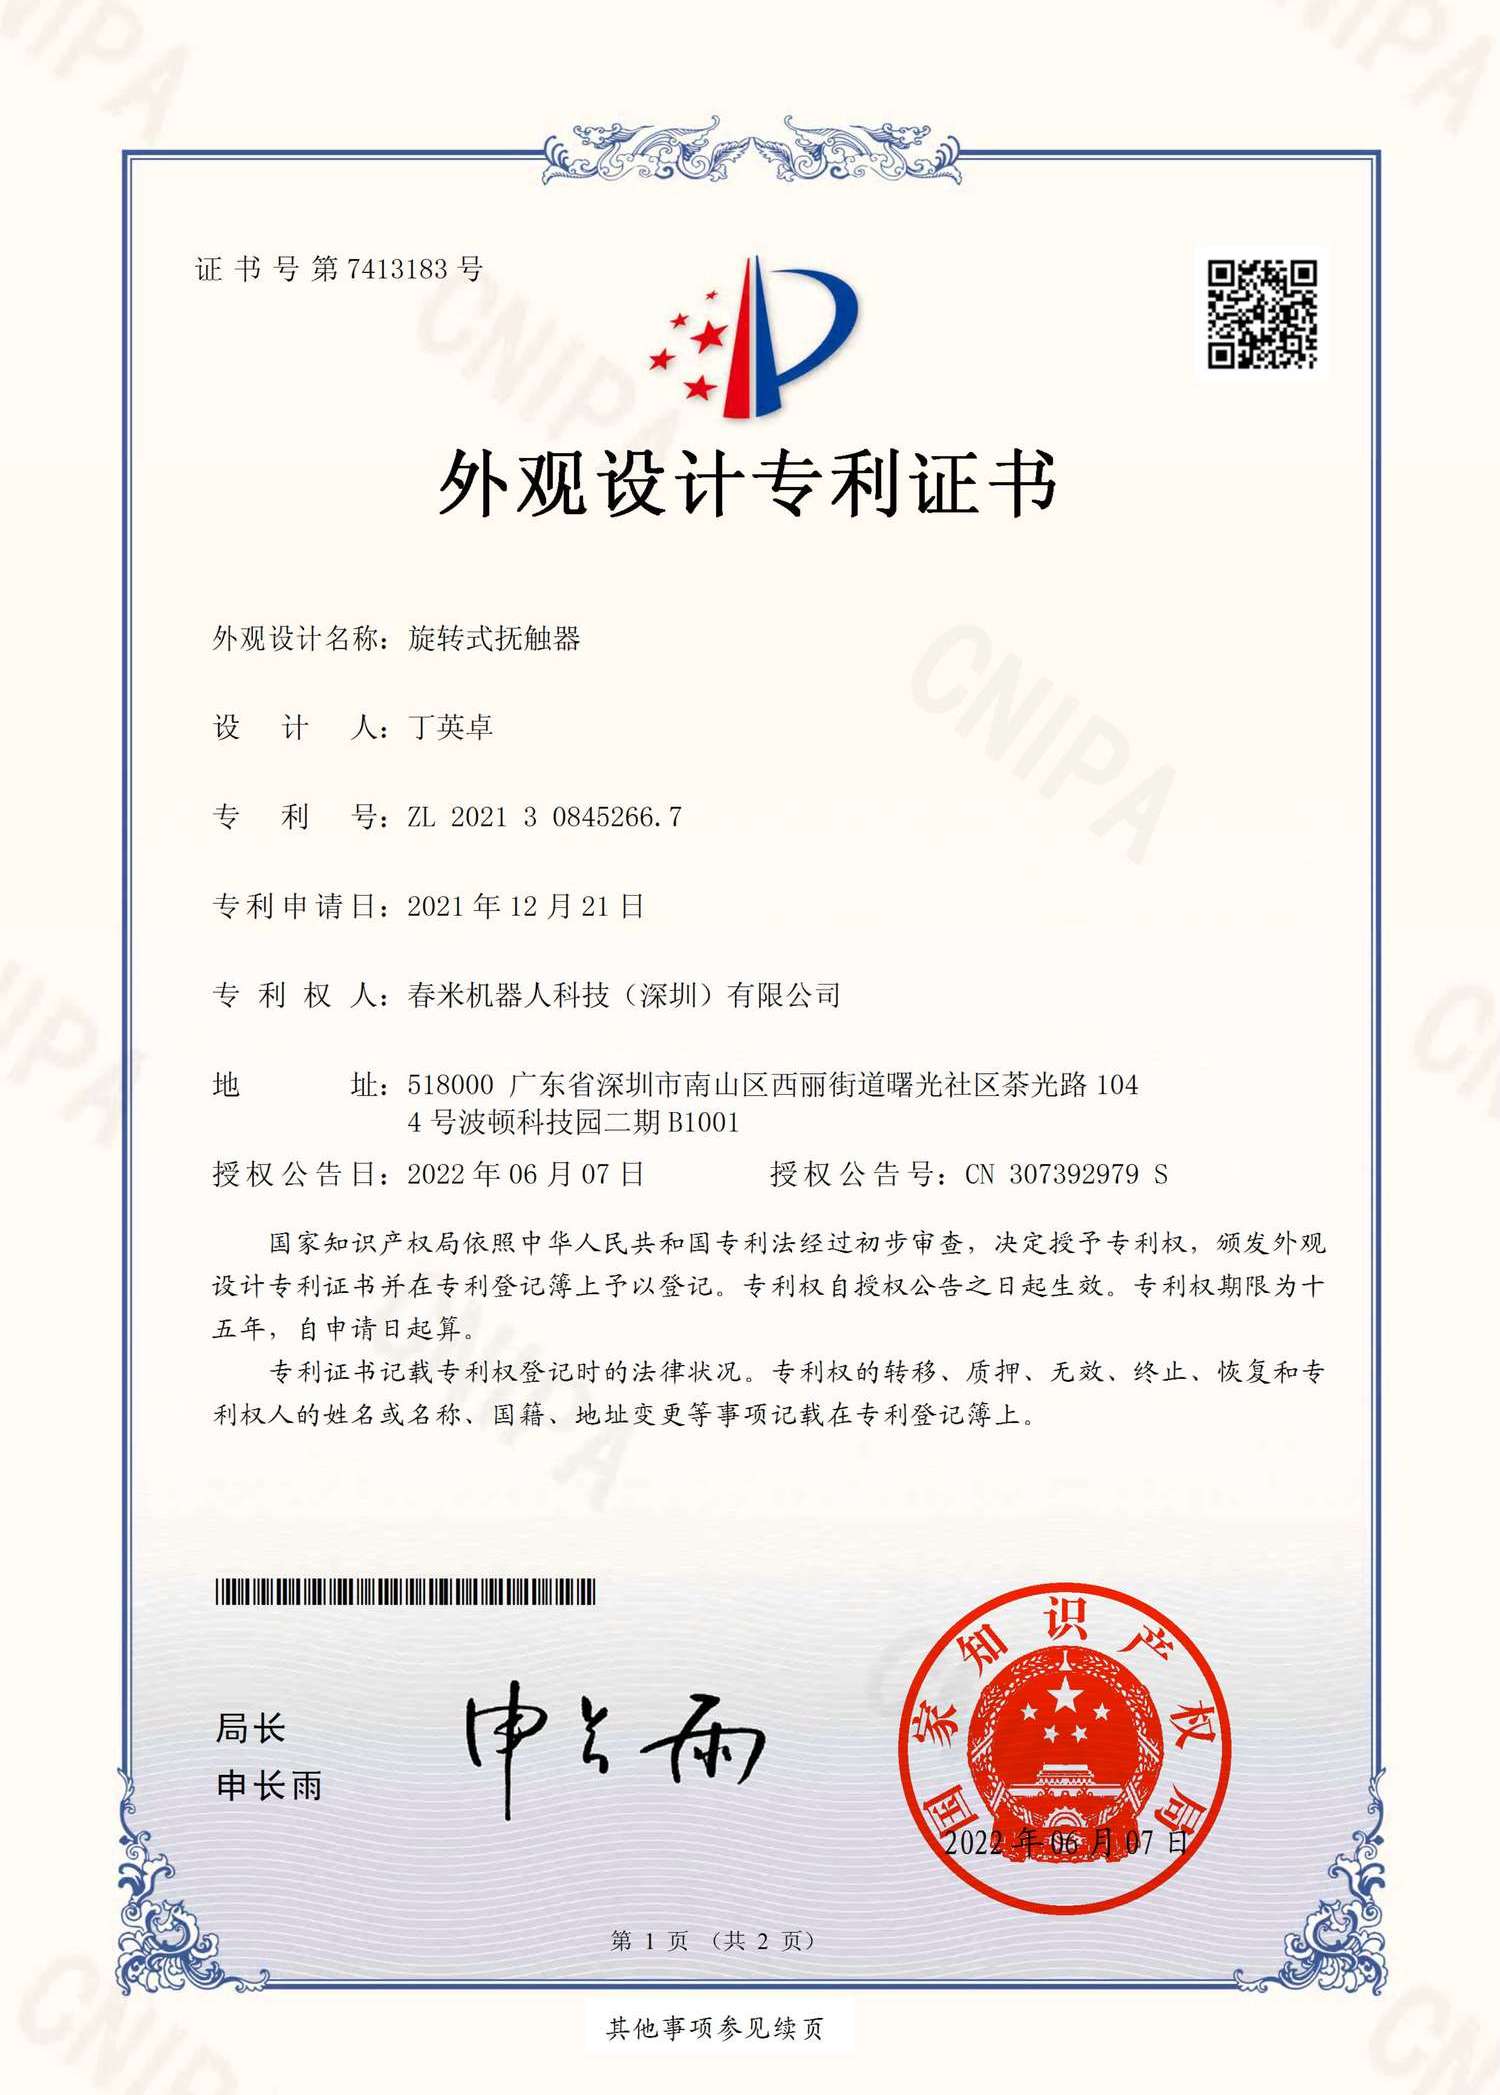 旋转式抚触器-专利证书-CX321-0207 2021308452667 证书 春米机器人(签章)_1.png